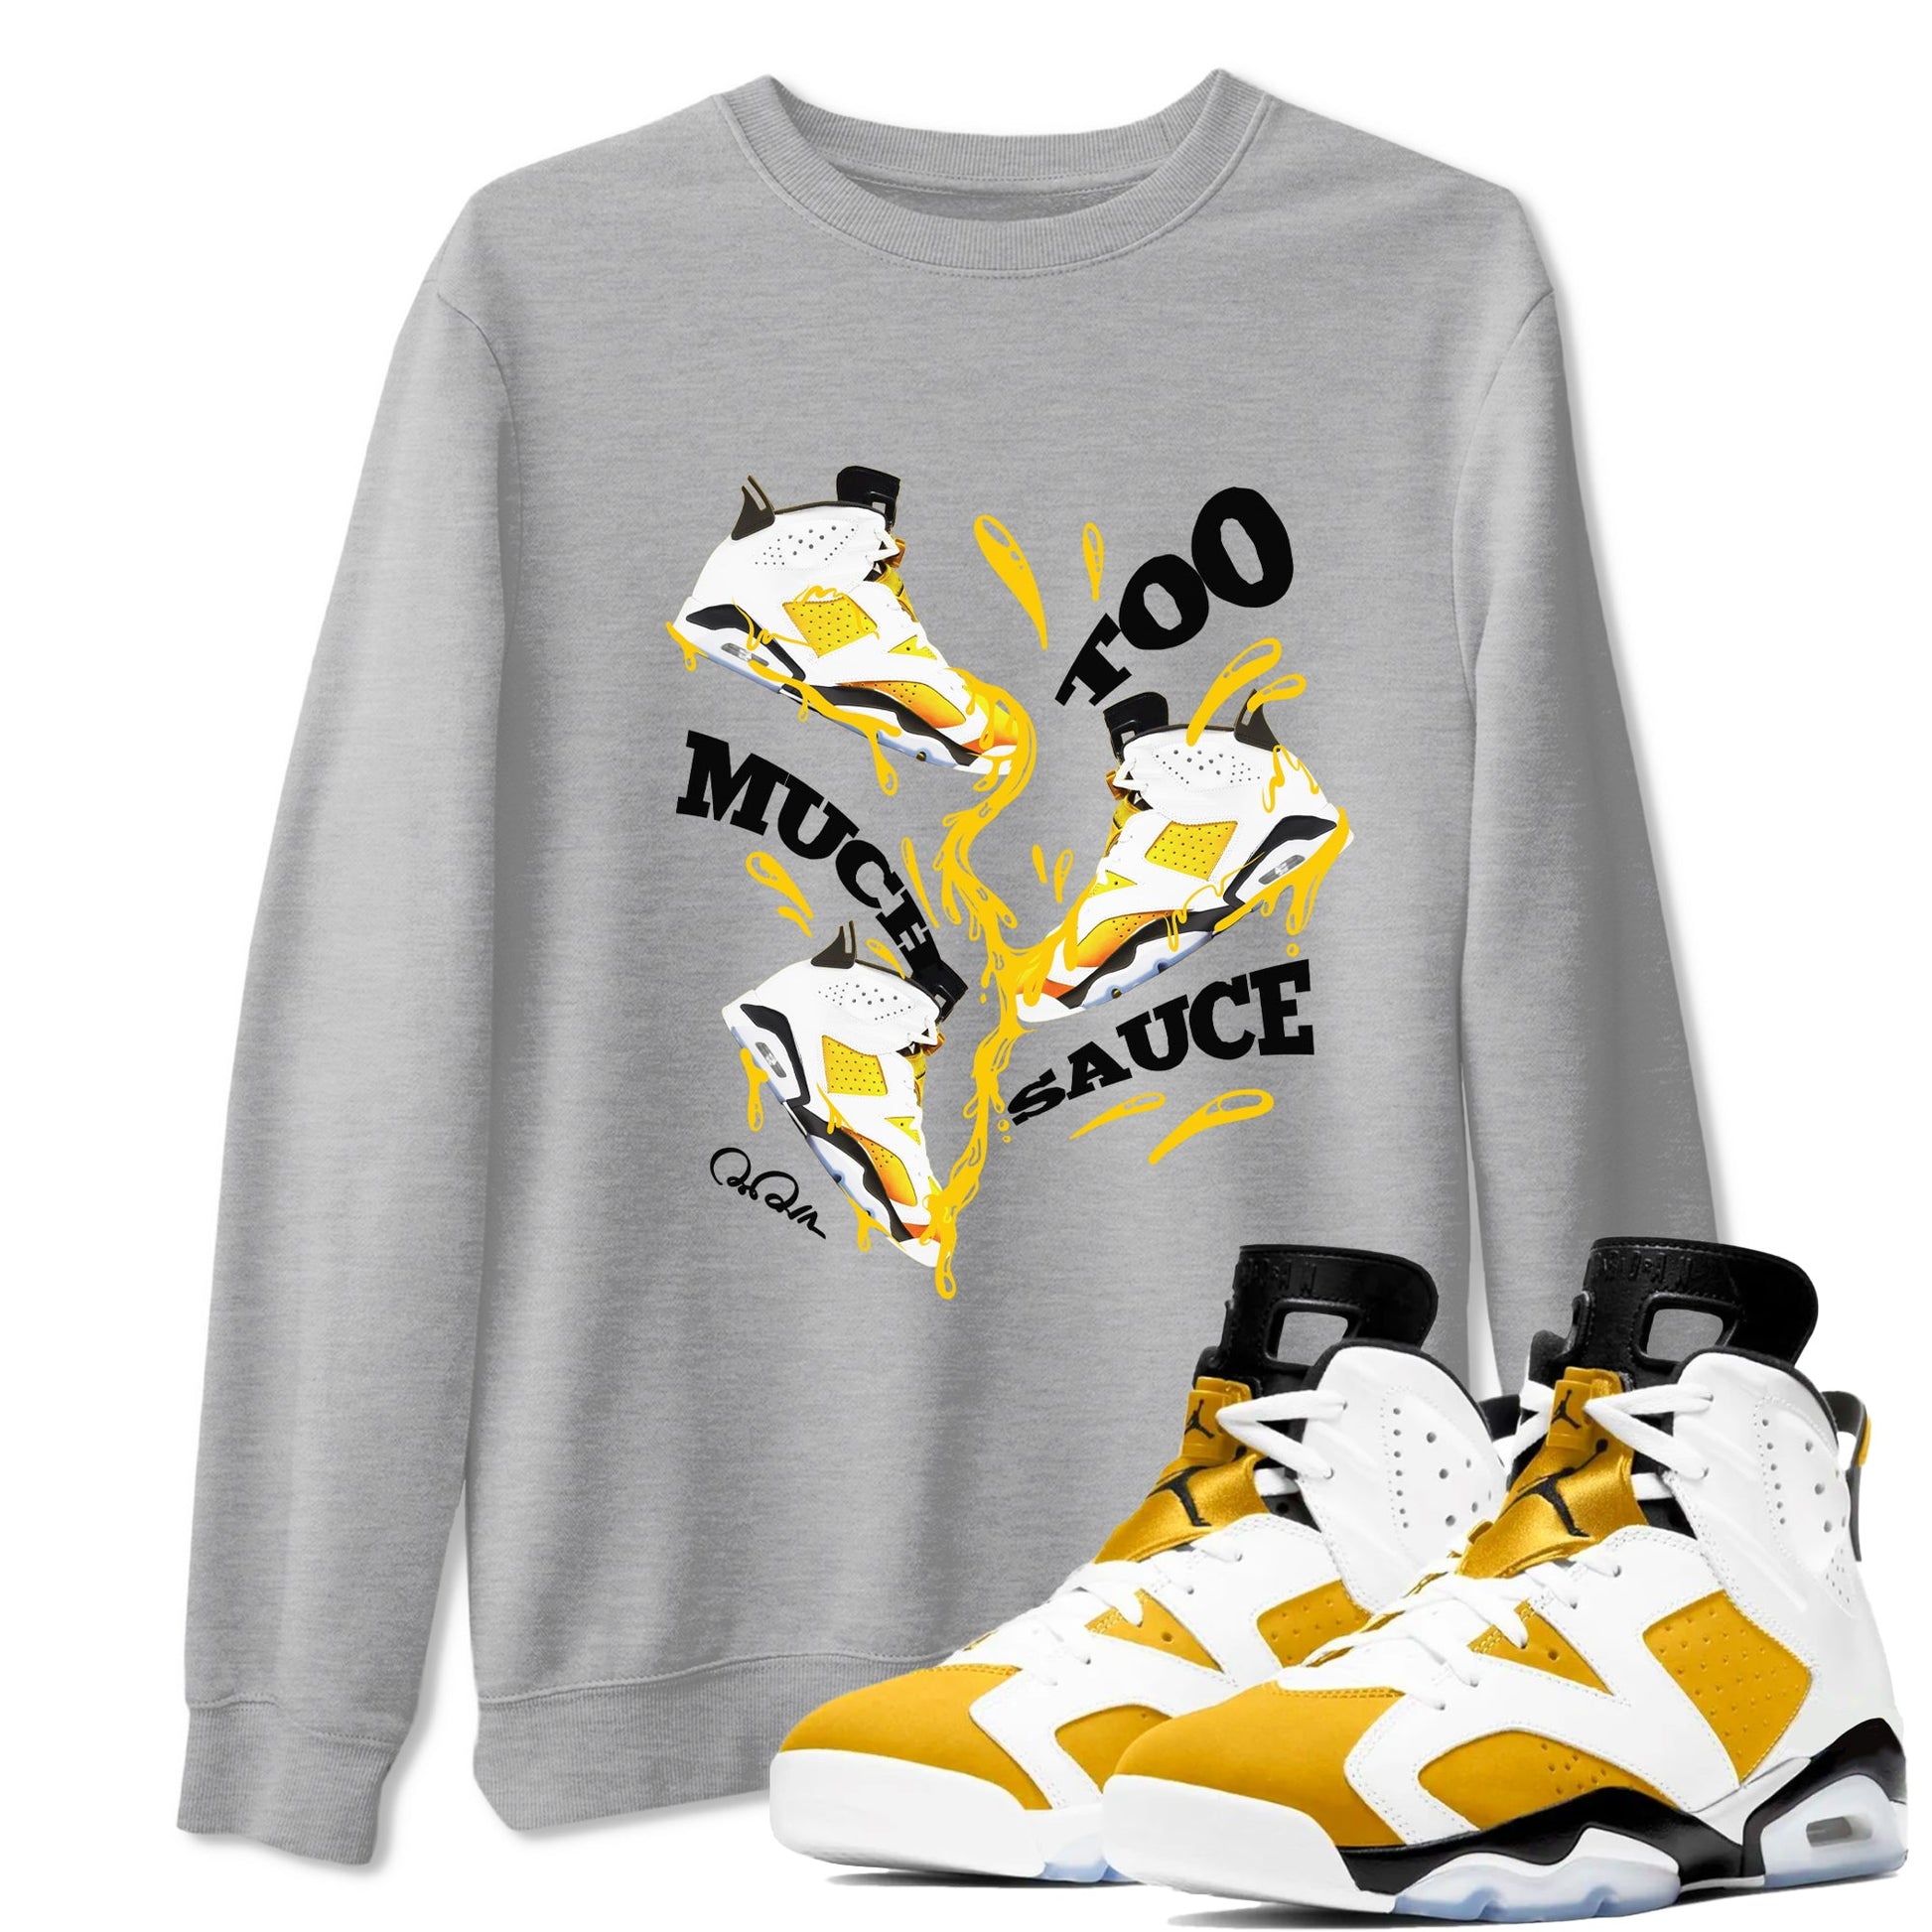 6s Yellow Ochre shirt to match jordans Too Much Sauce sneaker tees Air Jordan 6 Yellow Ochre SNRT Sneaker Release Tees Unisex Heather Grey 1 T-Shirt